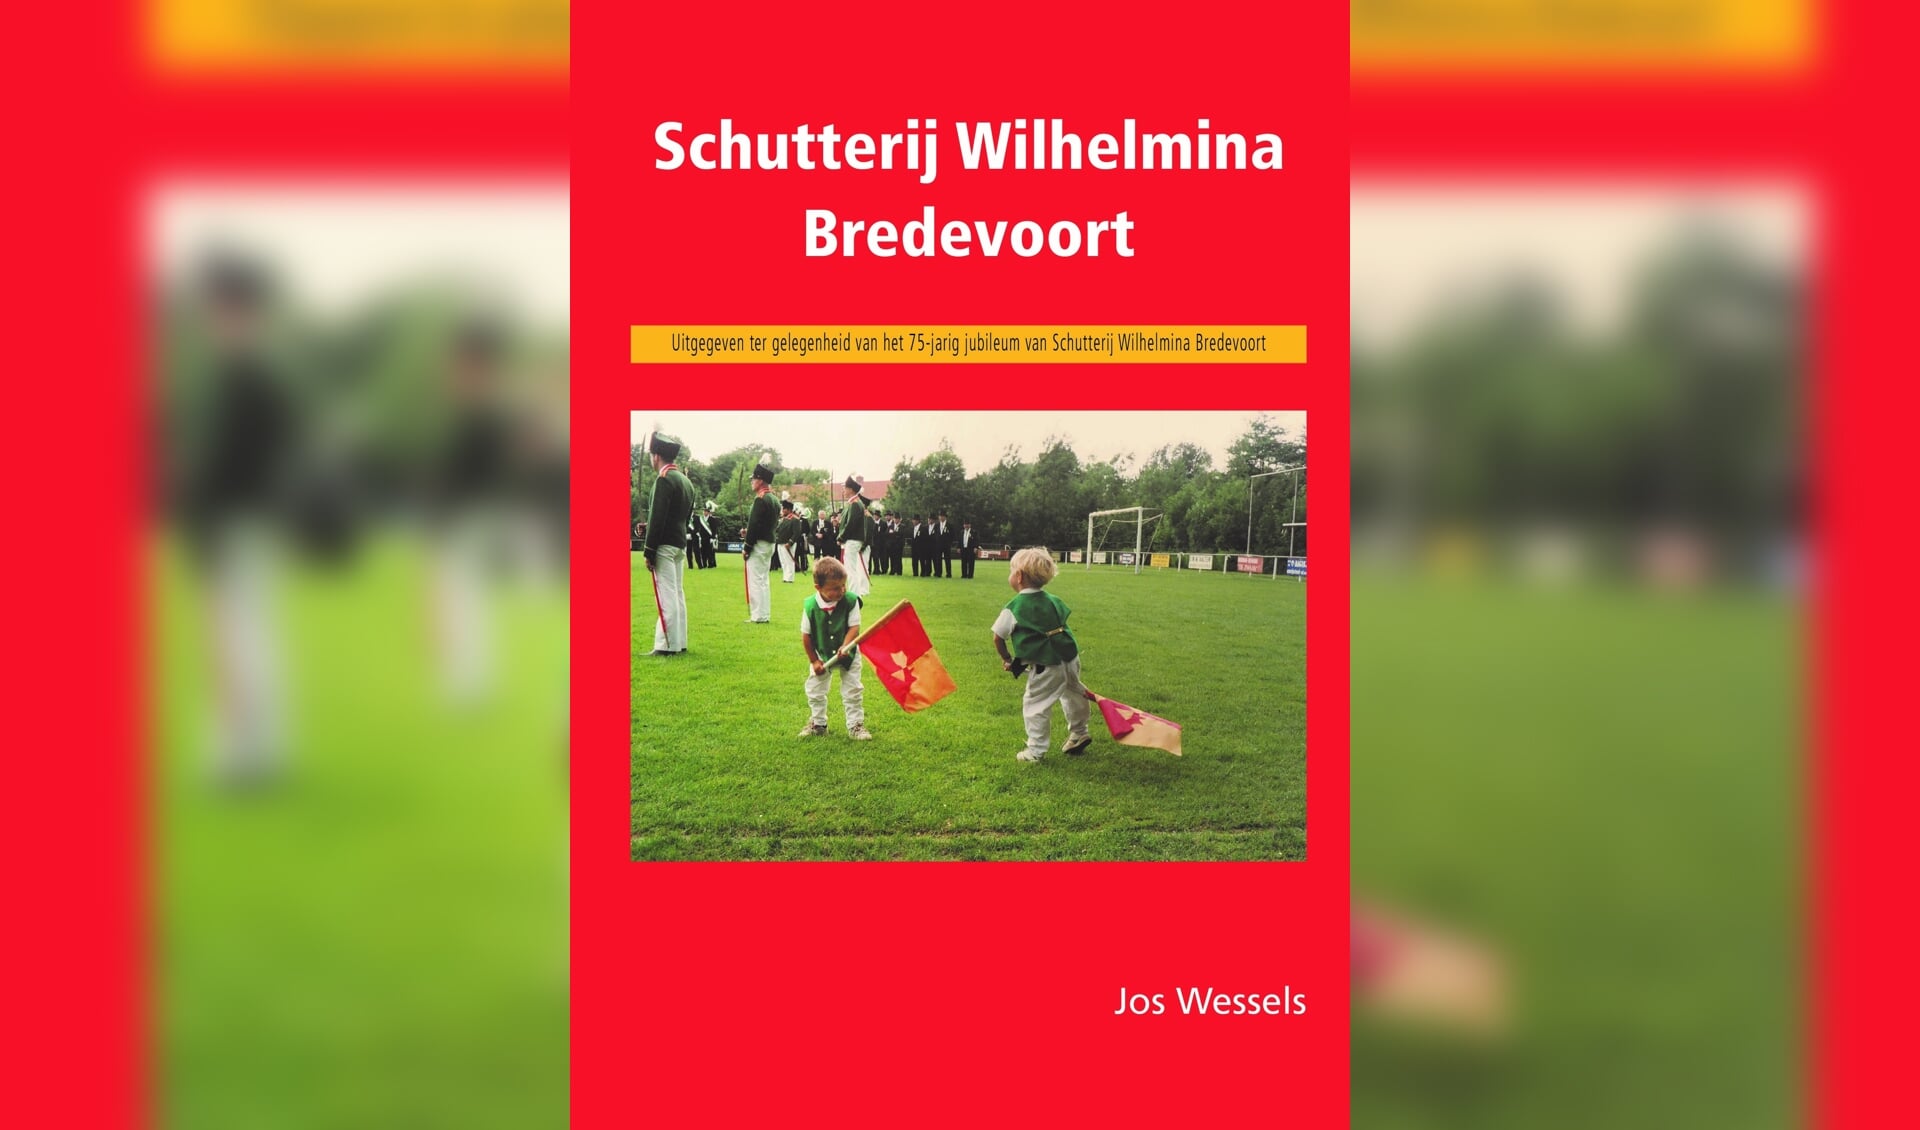 Cover van boek 75 jaar Schutterij Wilhelmina. Foto: PR